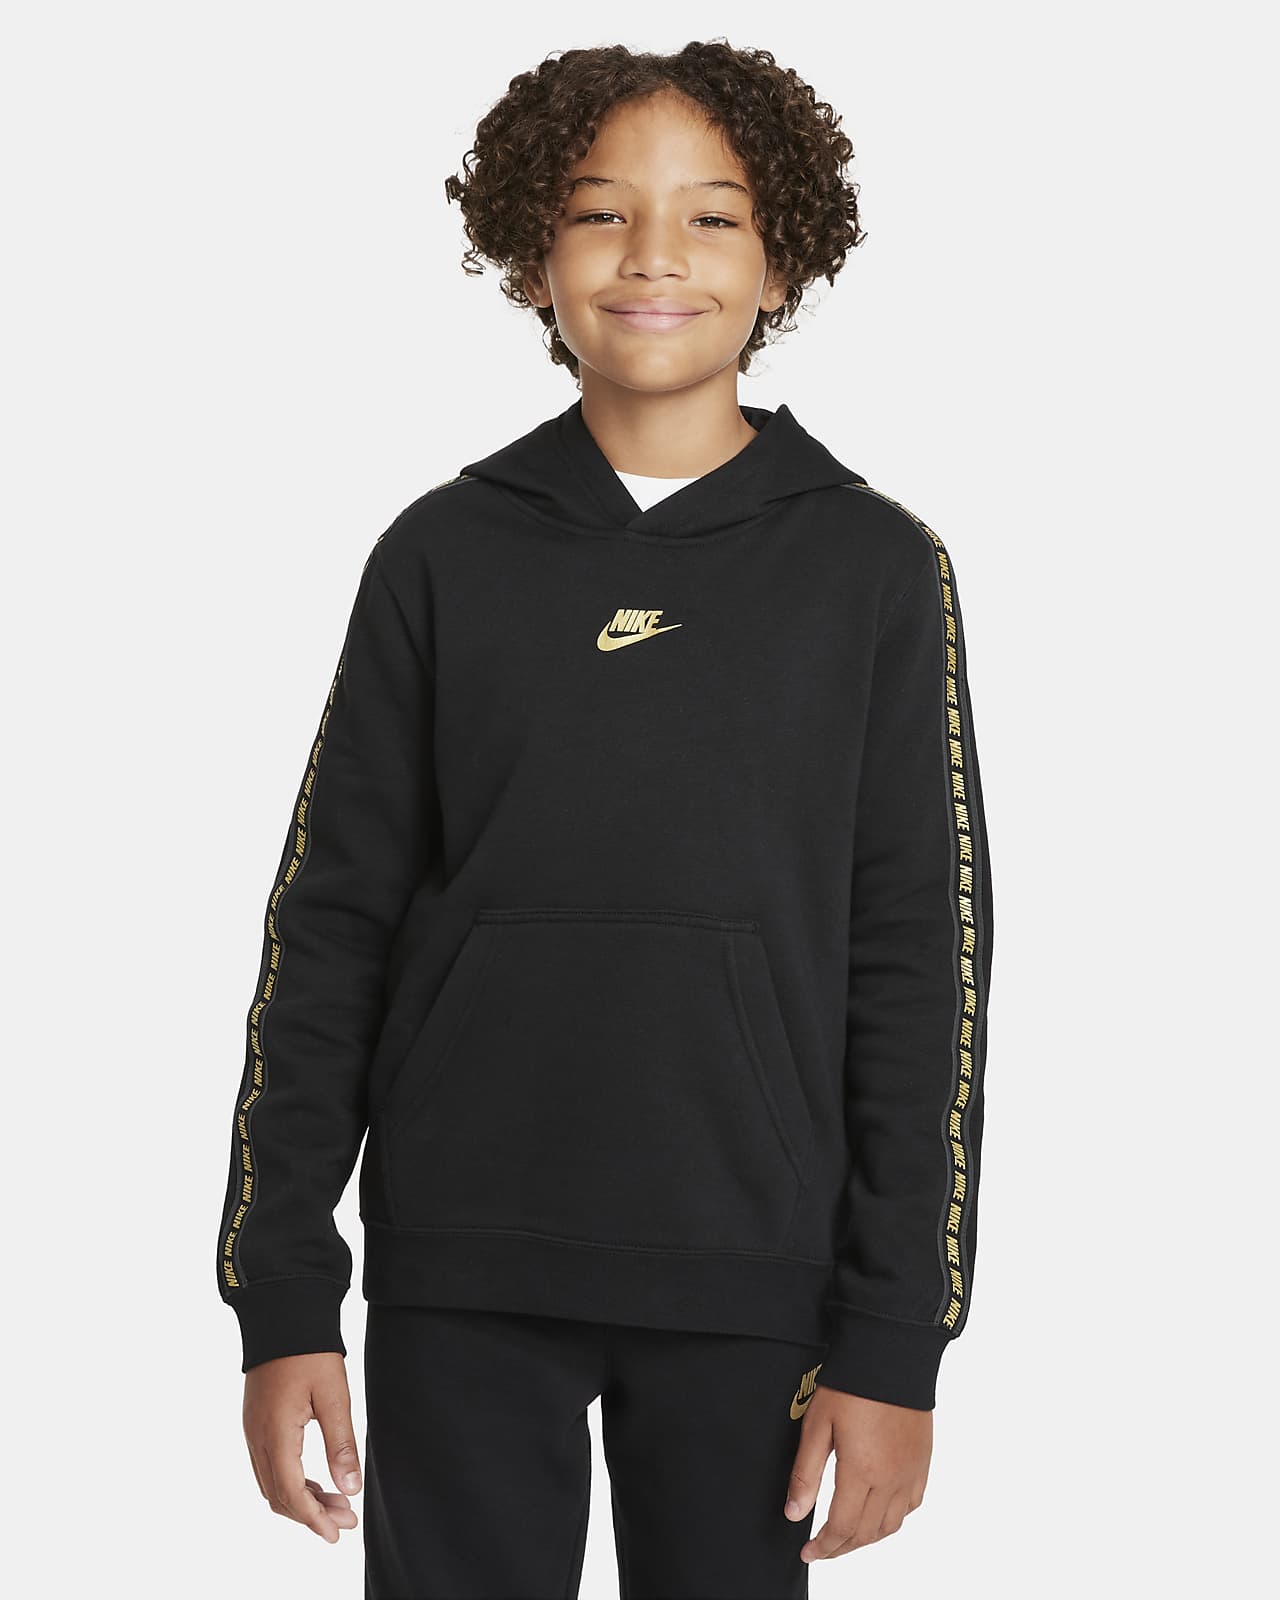 Flísová mikina Nike Sportswear s kapucí pro větší děti (chlapce)